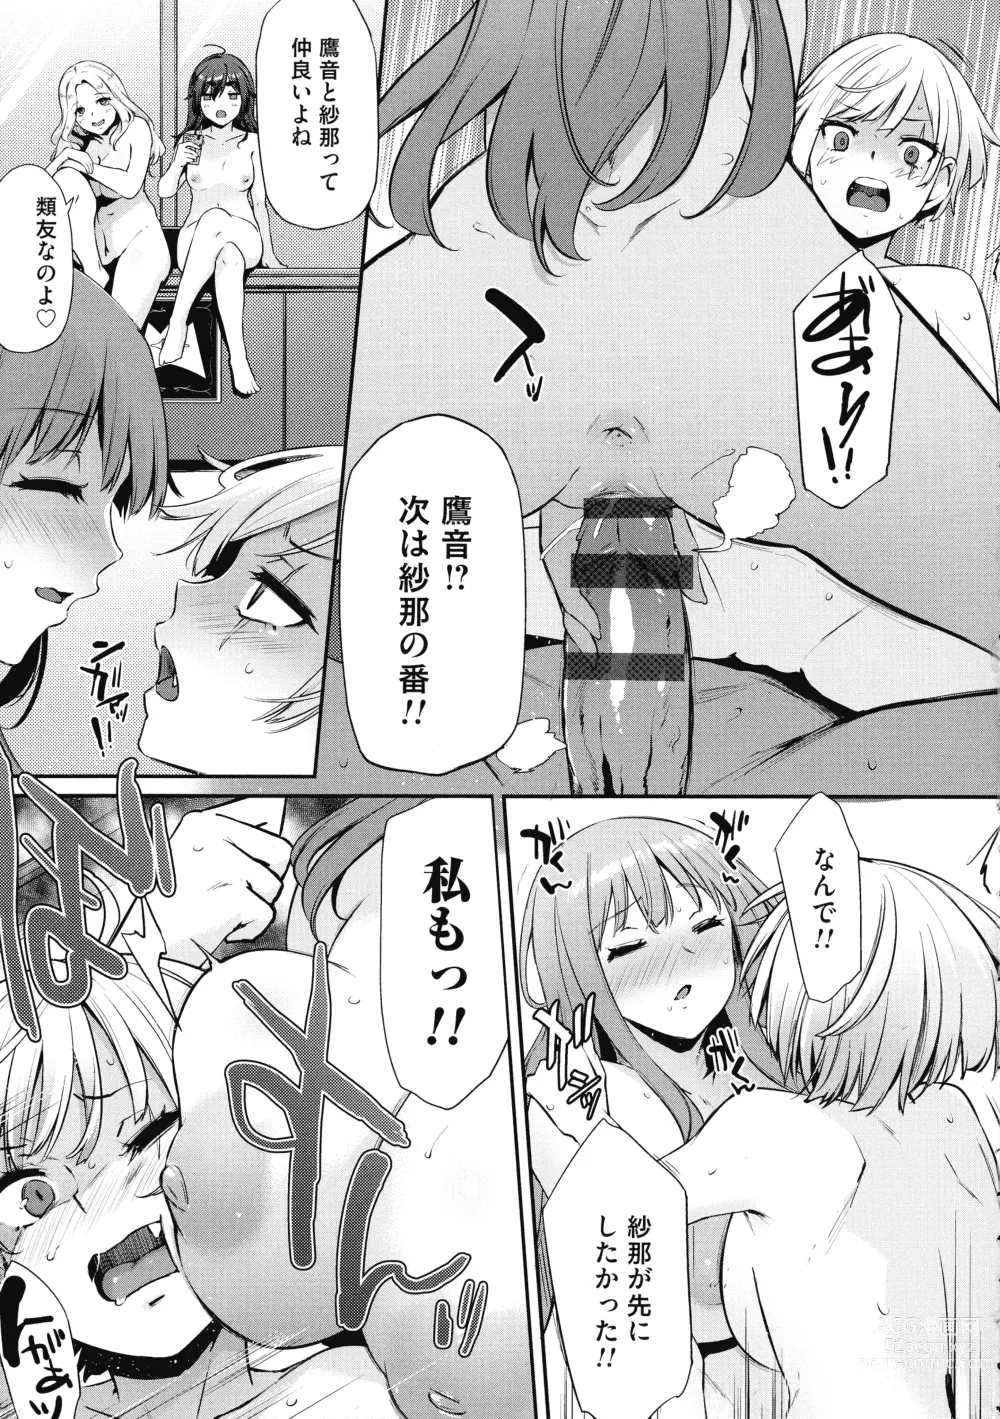 Page 219 of manga Olympia! ~Yarimakuri Gakuen Saisei Kekaku~